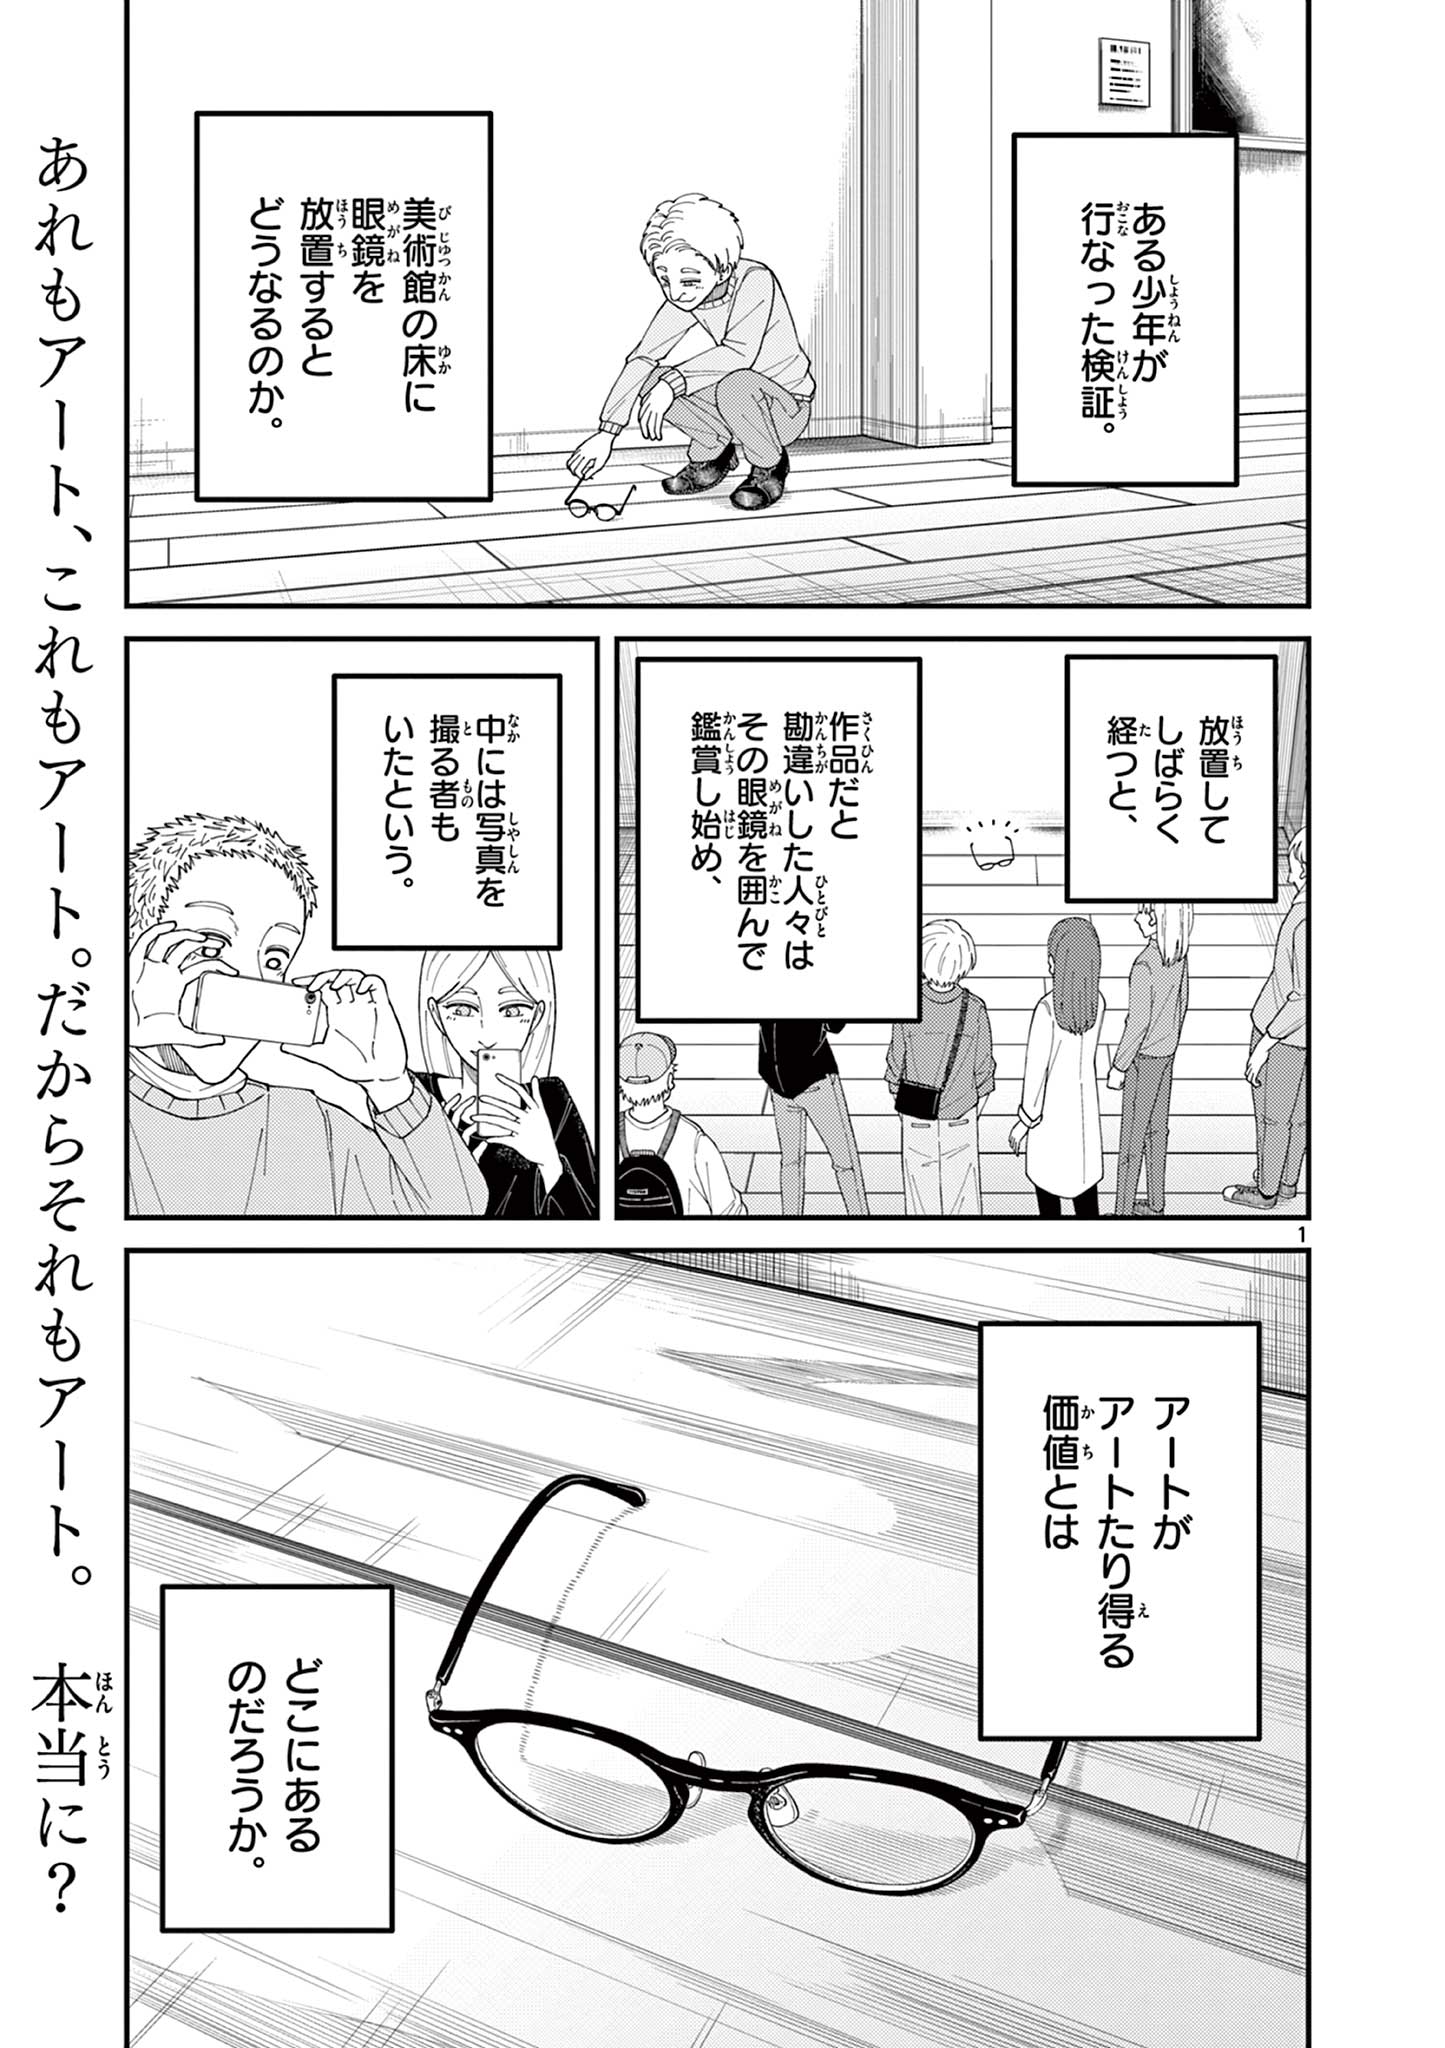 Mimozaizumu - Chapter 1.1 - Page 1